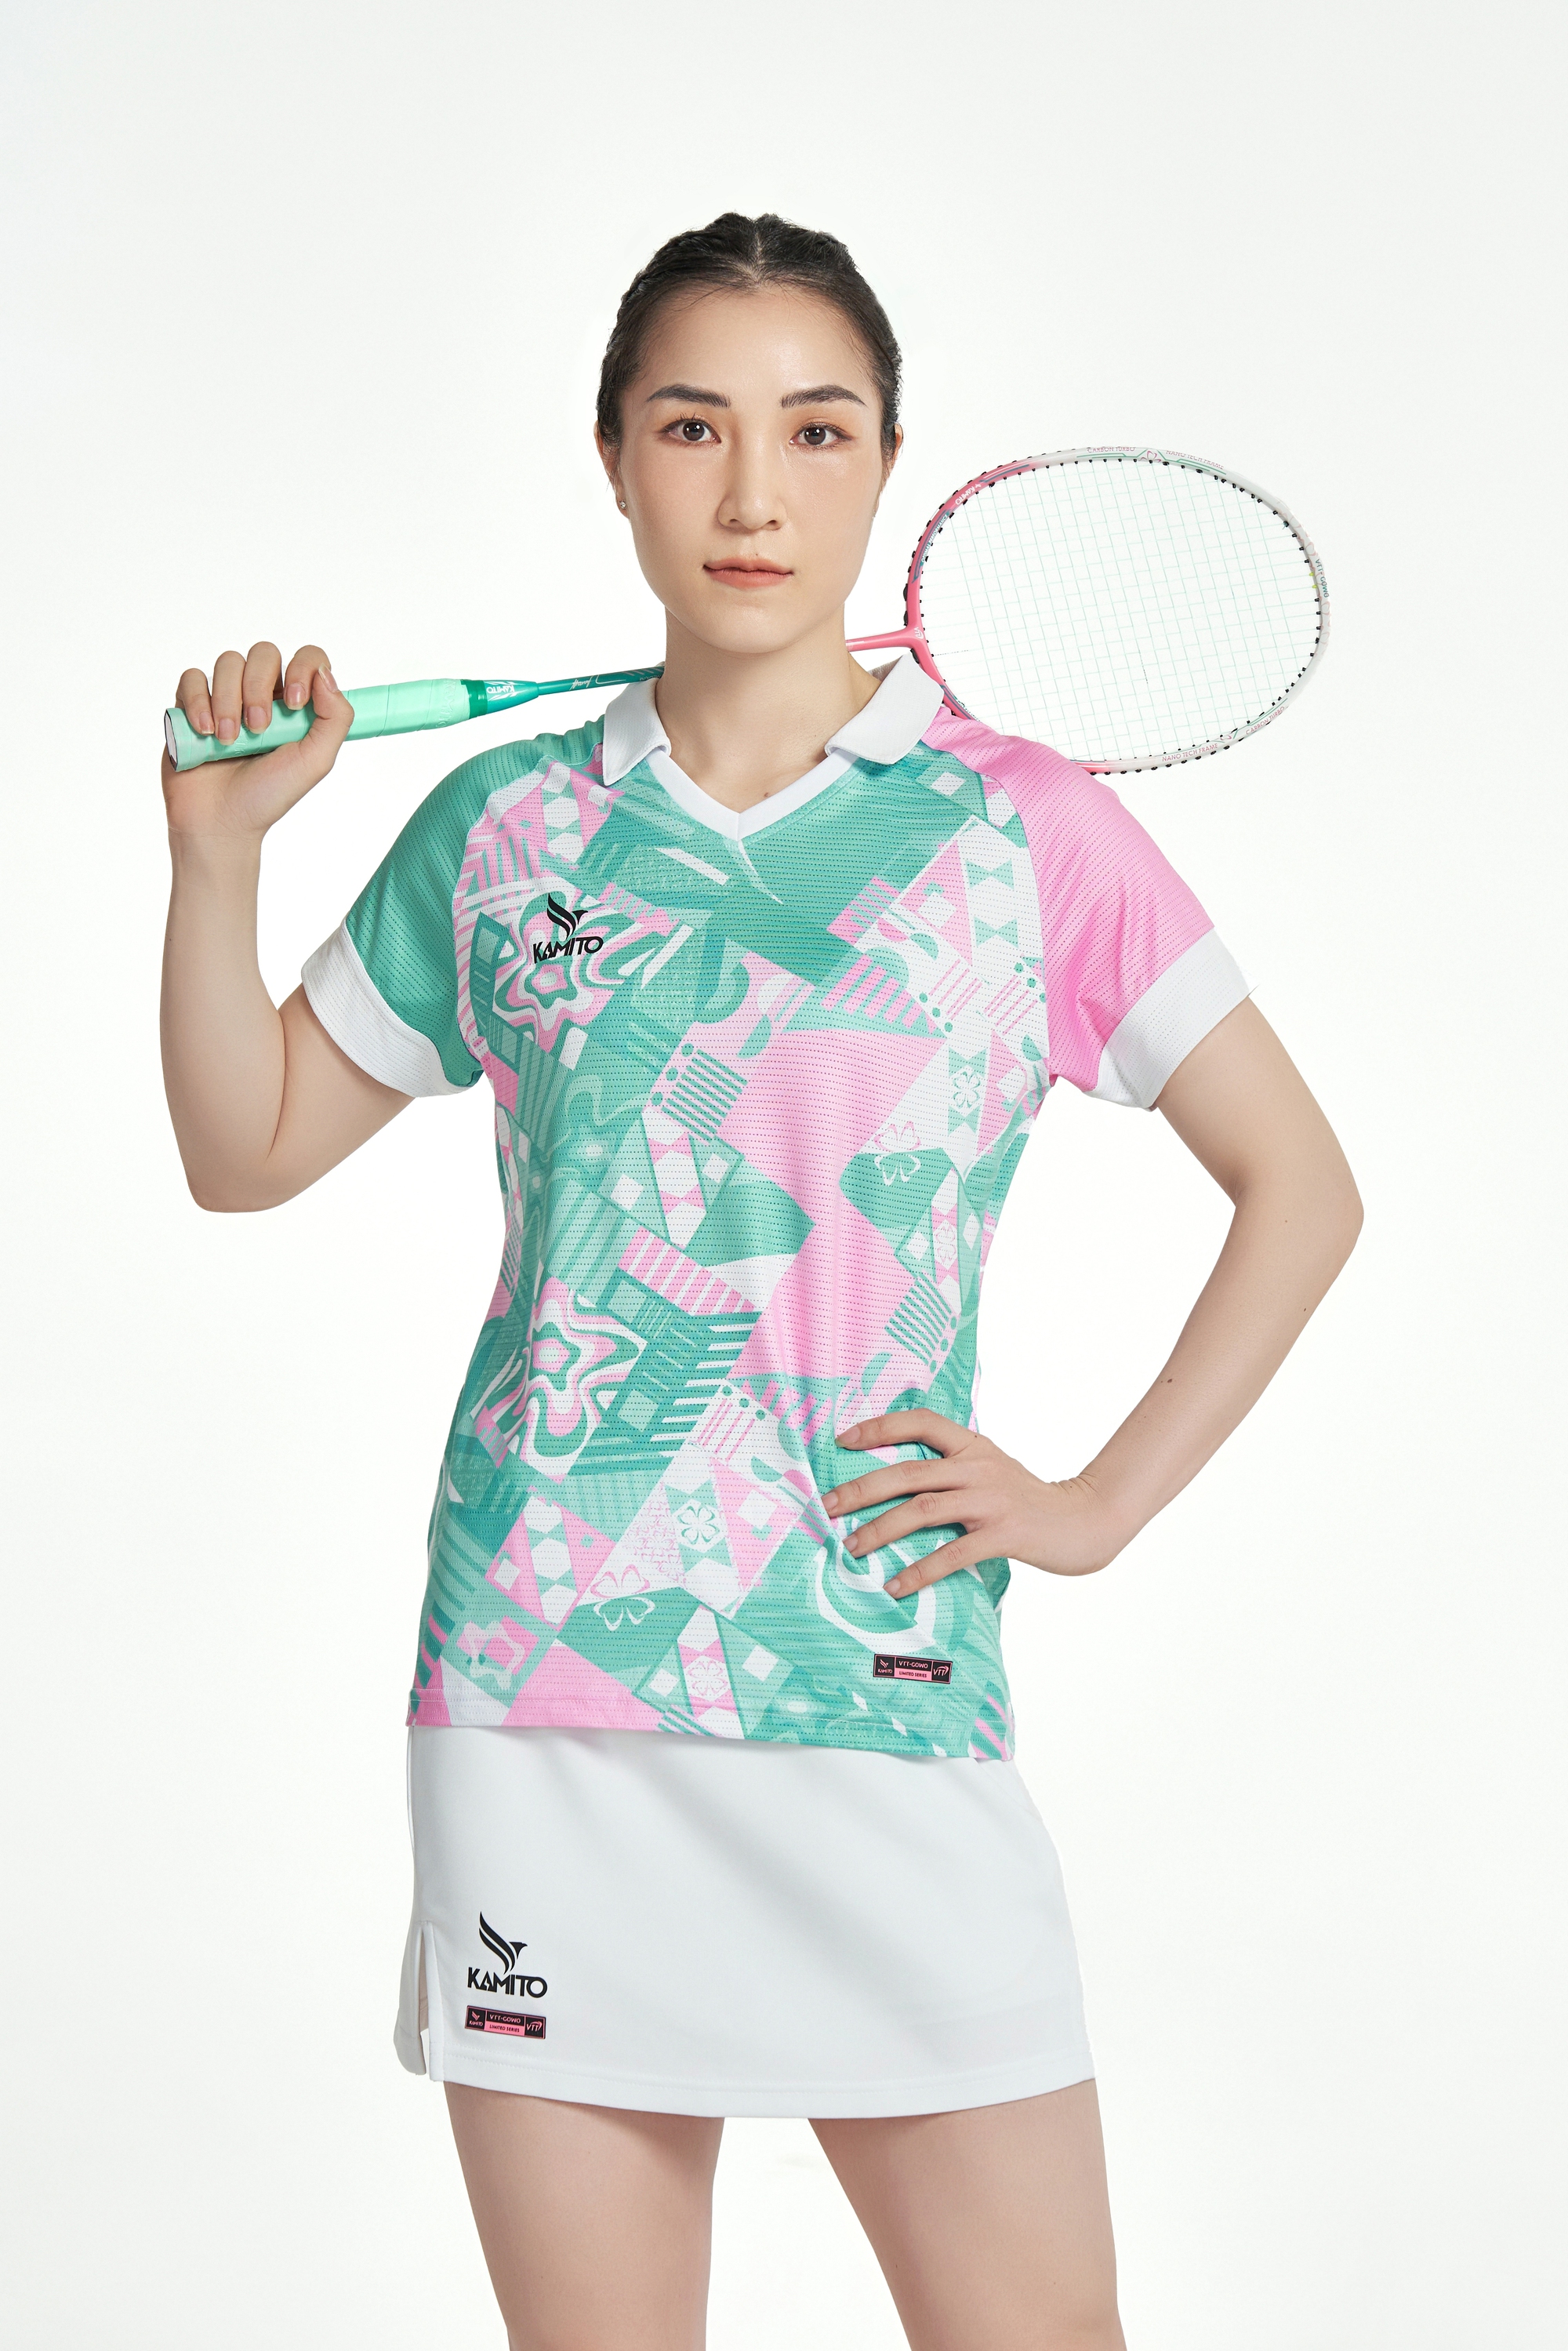 Đồng hành cùng Kamito, Vũ Thị Trang là tay vợt nữ đầu tiên có bộ sưu tập cá nhân- Ảnh 2.